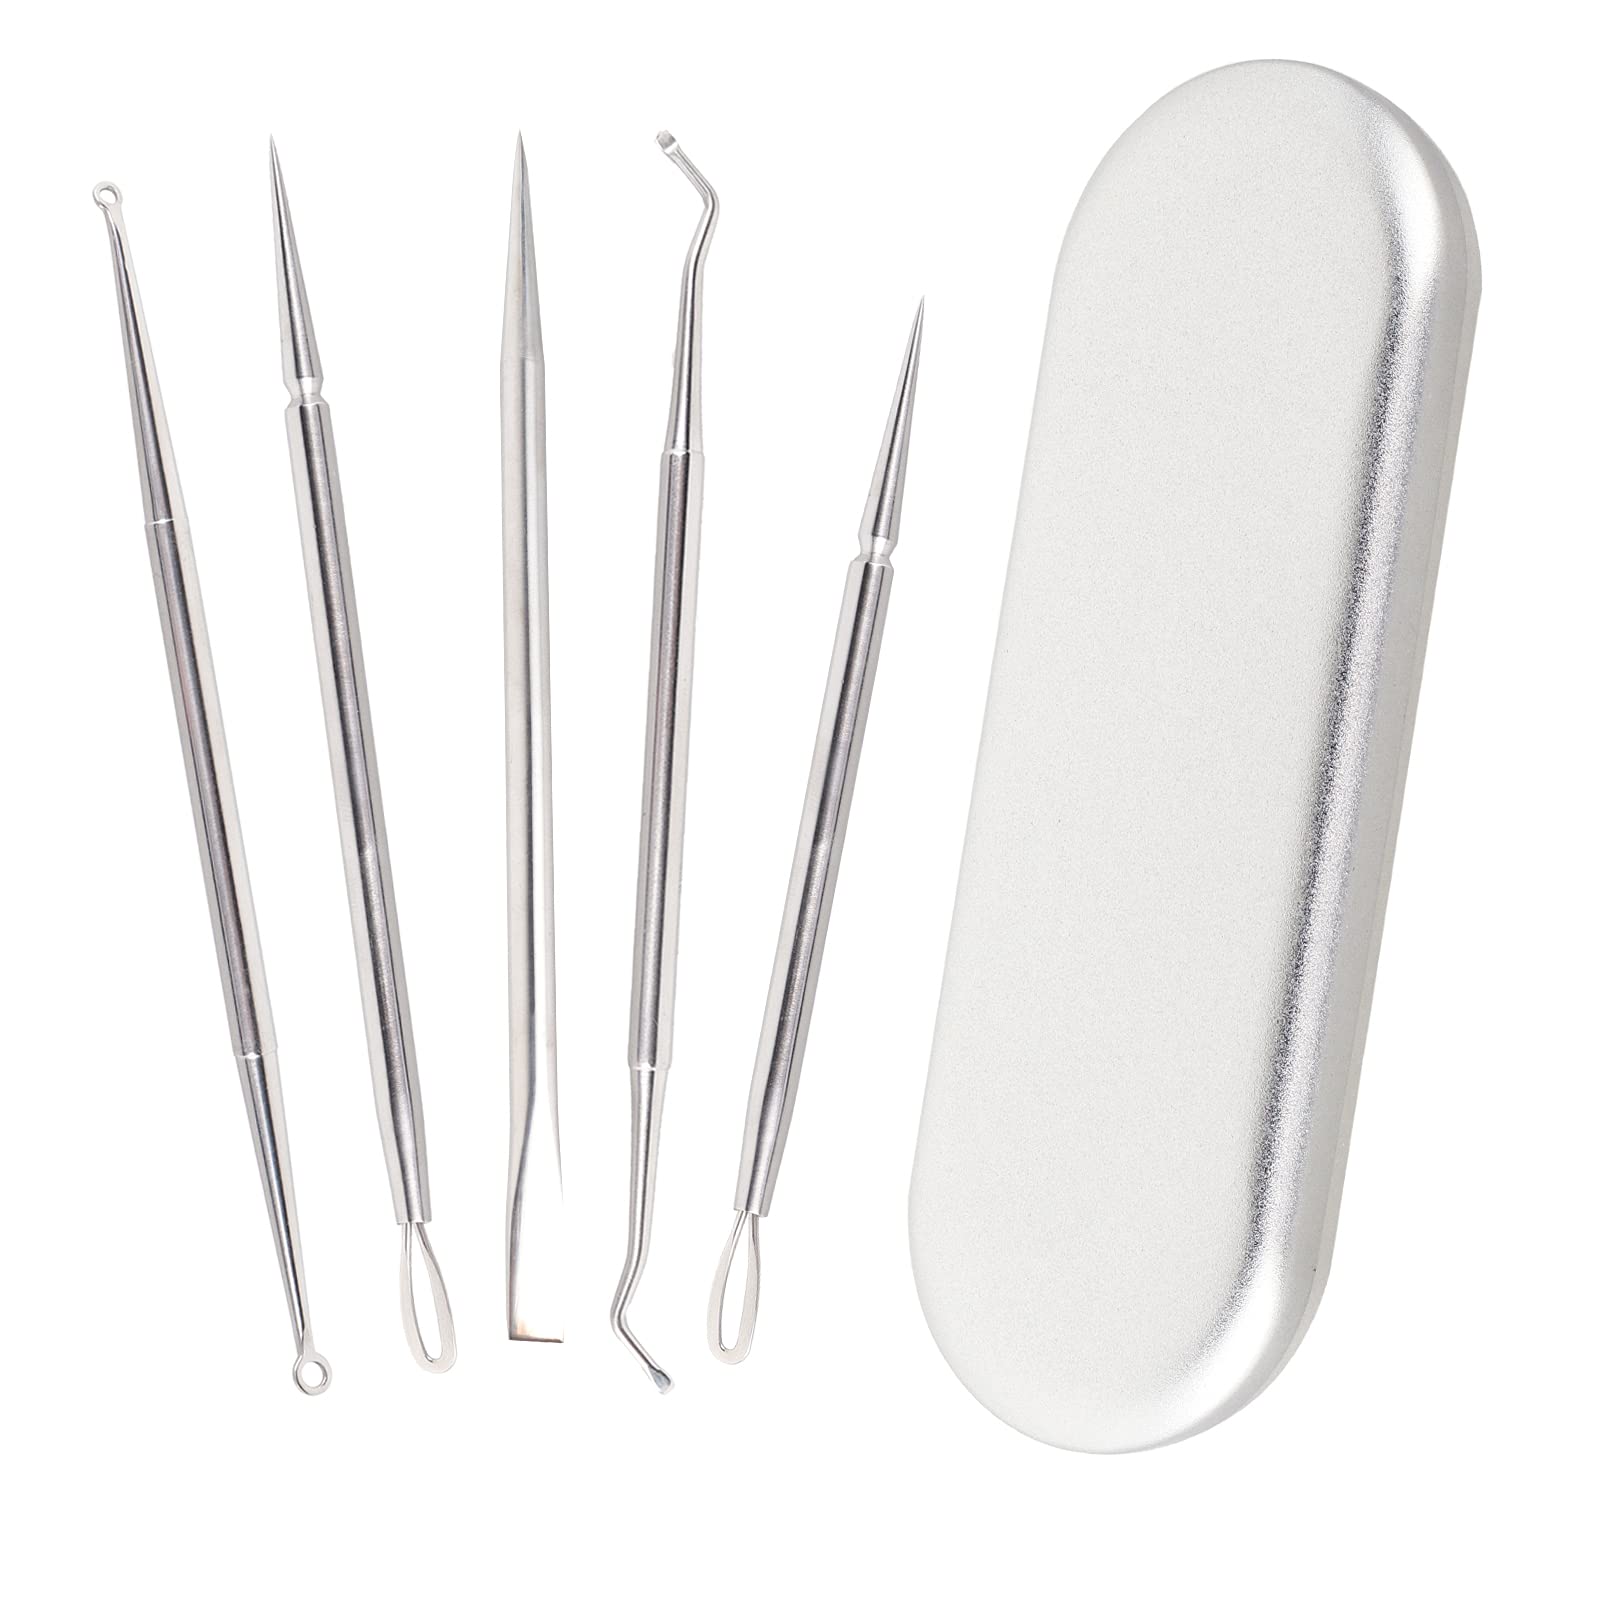 5PCS Blackhead Remover Tool Kit Professional Pimple Popper Tool